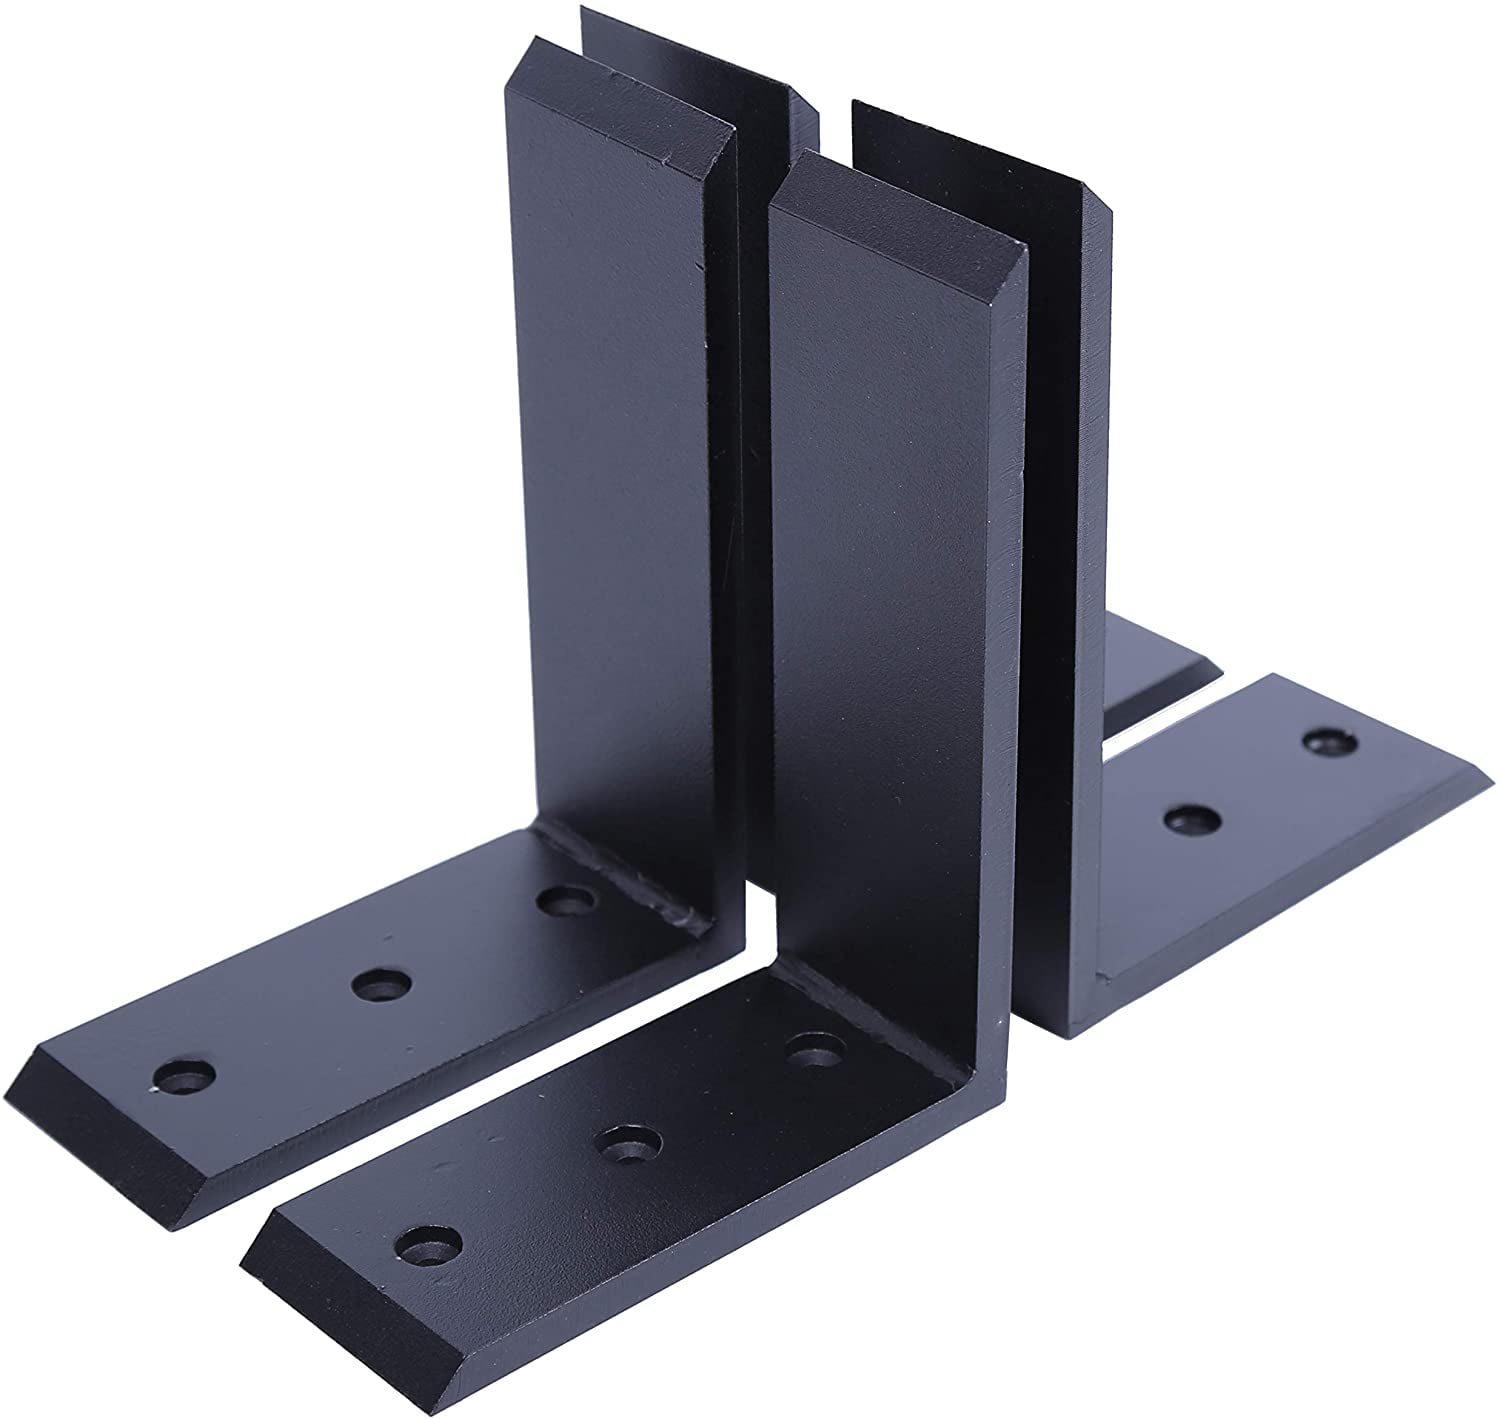 2 Heavy Duty Black Steel 6”x8” Countertop Support Brackets Mantel Shelf L Corbel 